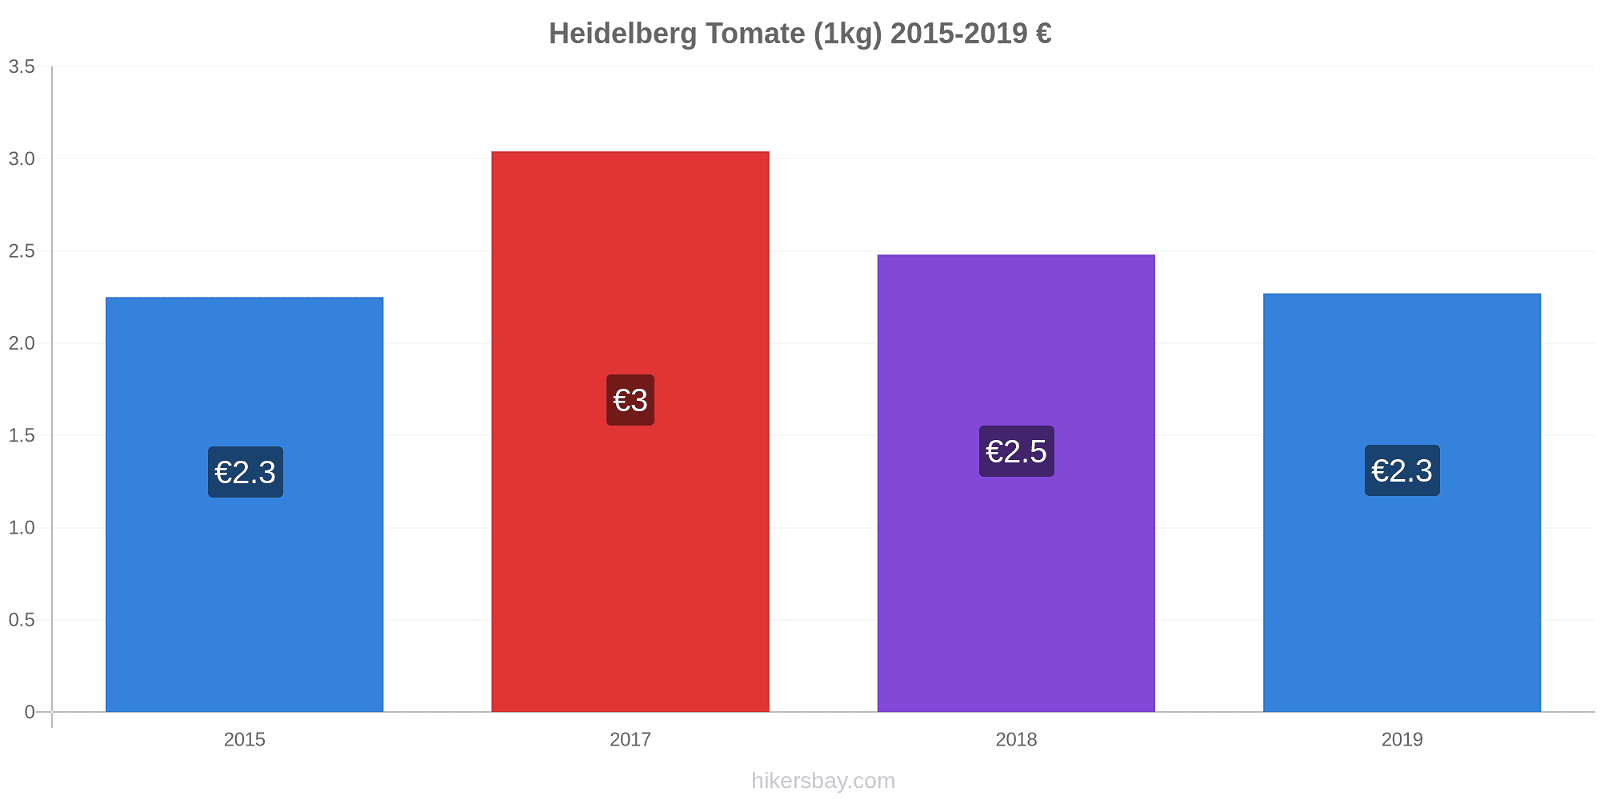 Heidelberg cambios de precios Tomate (1kg) hikersbay.com